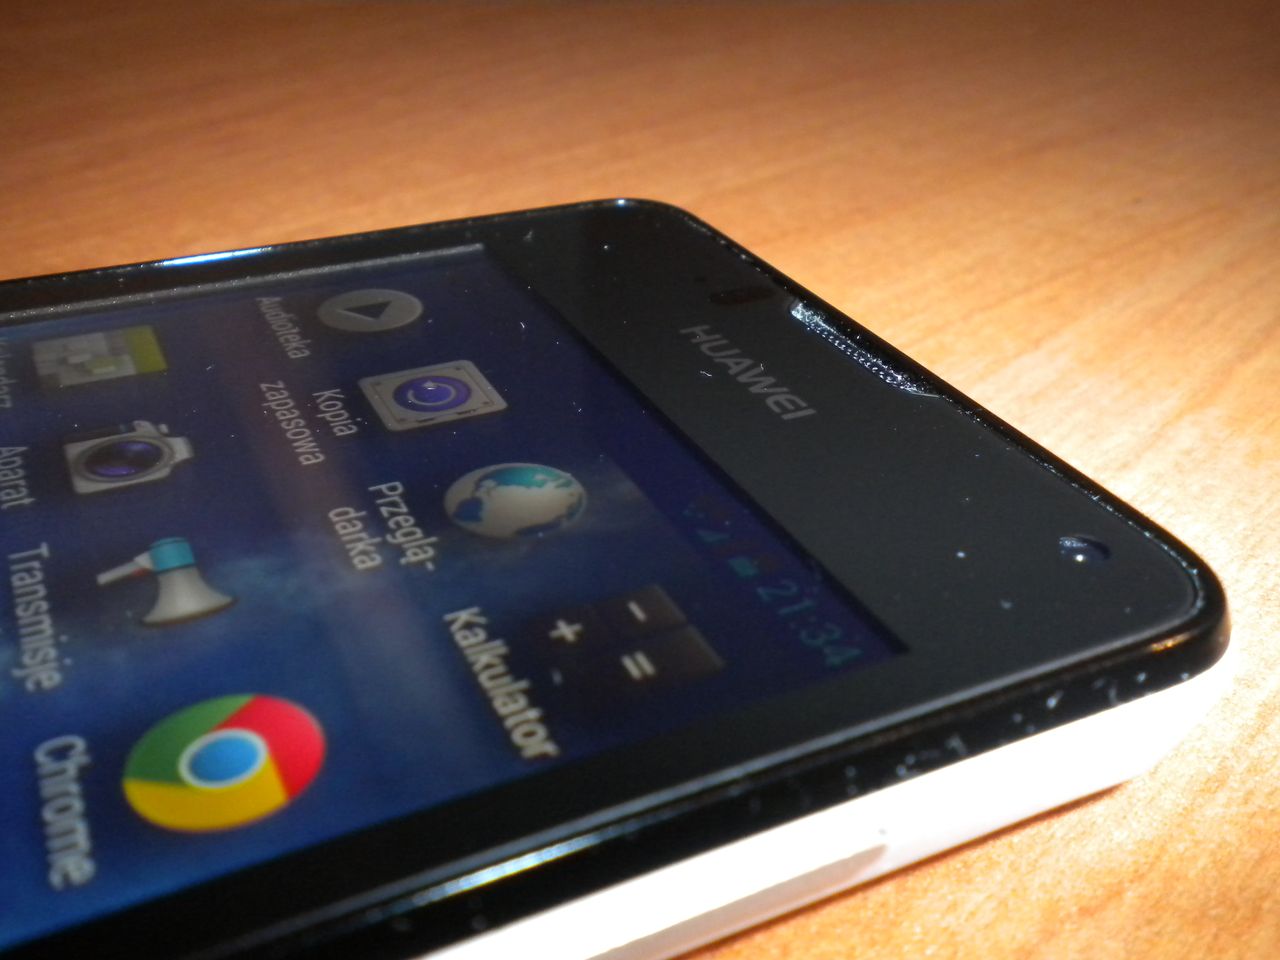 Recenzja budżetowego smartfona Huawei Ascend Y300